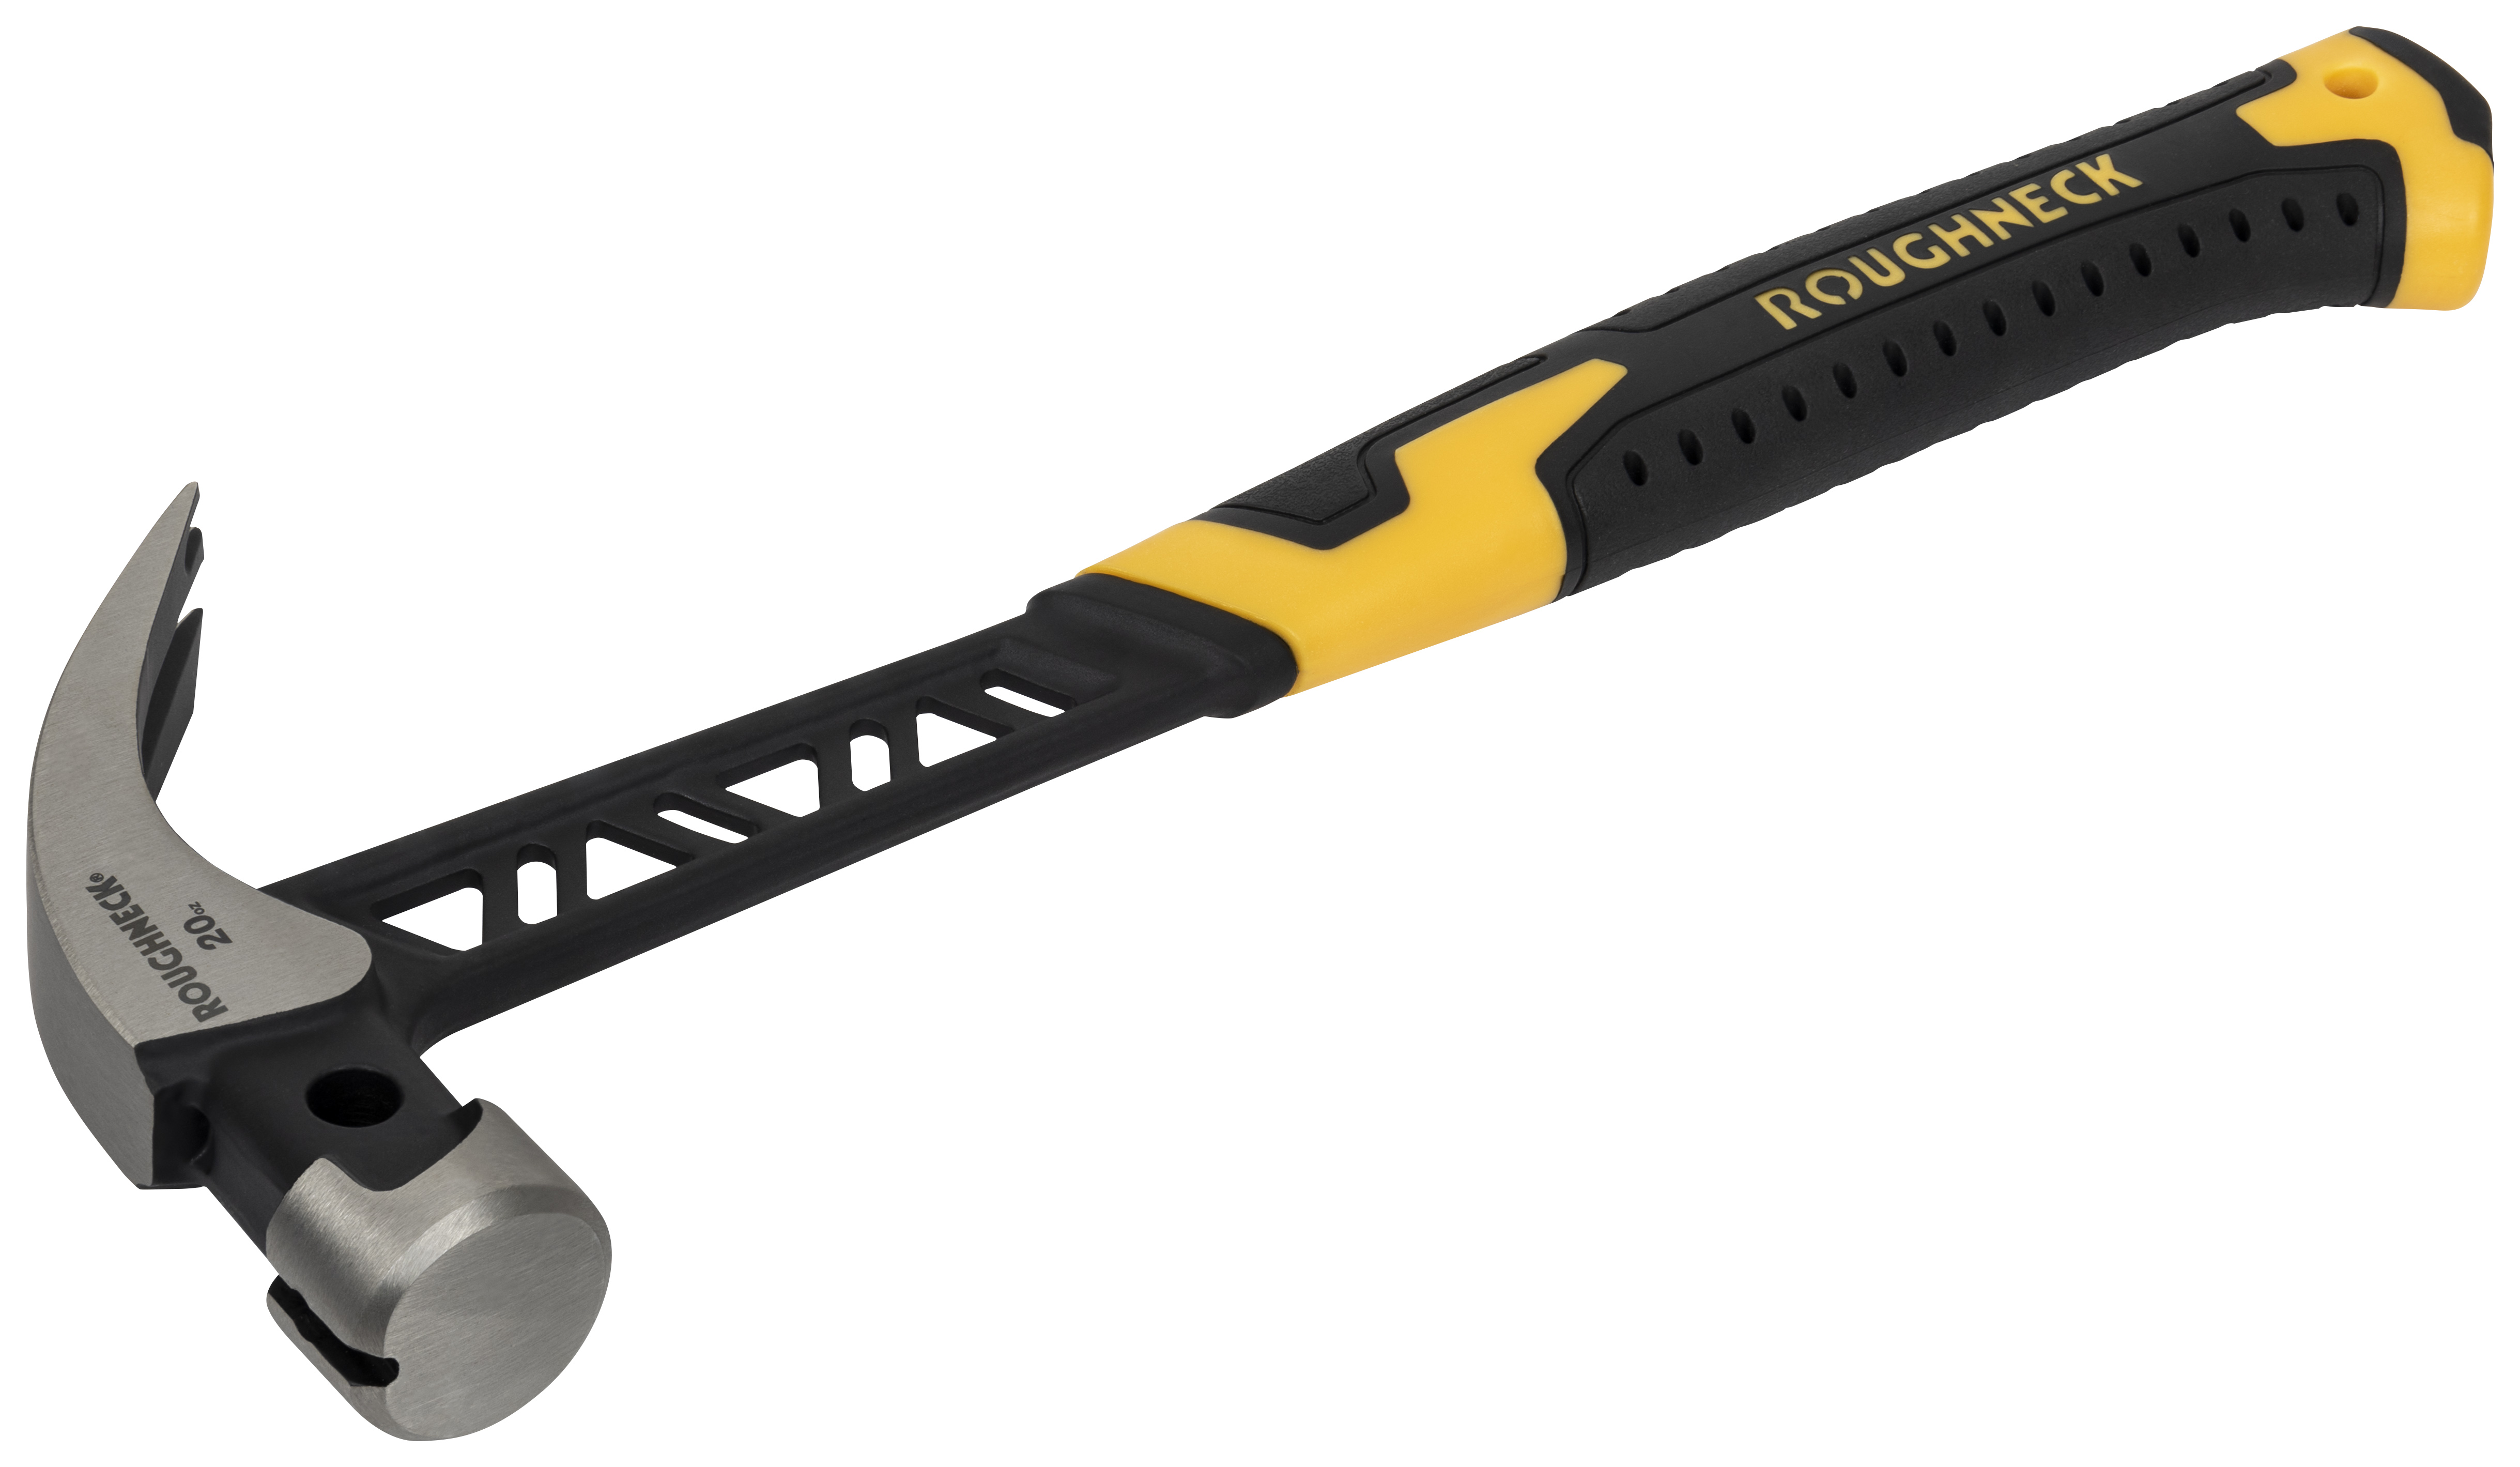 Roughneck Gorilla 11-015 V-Series Claw Hammer - 24oz